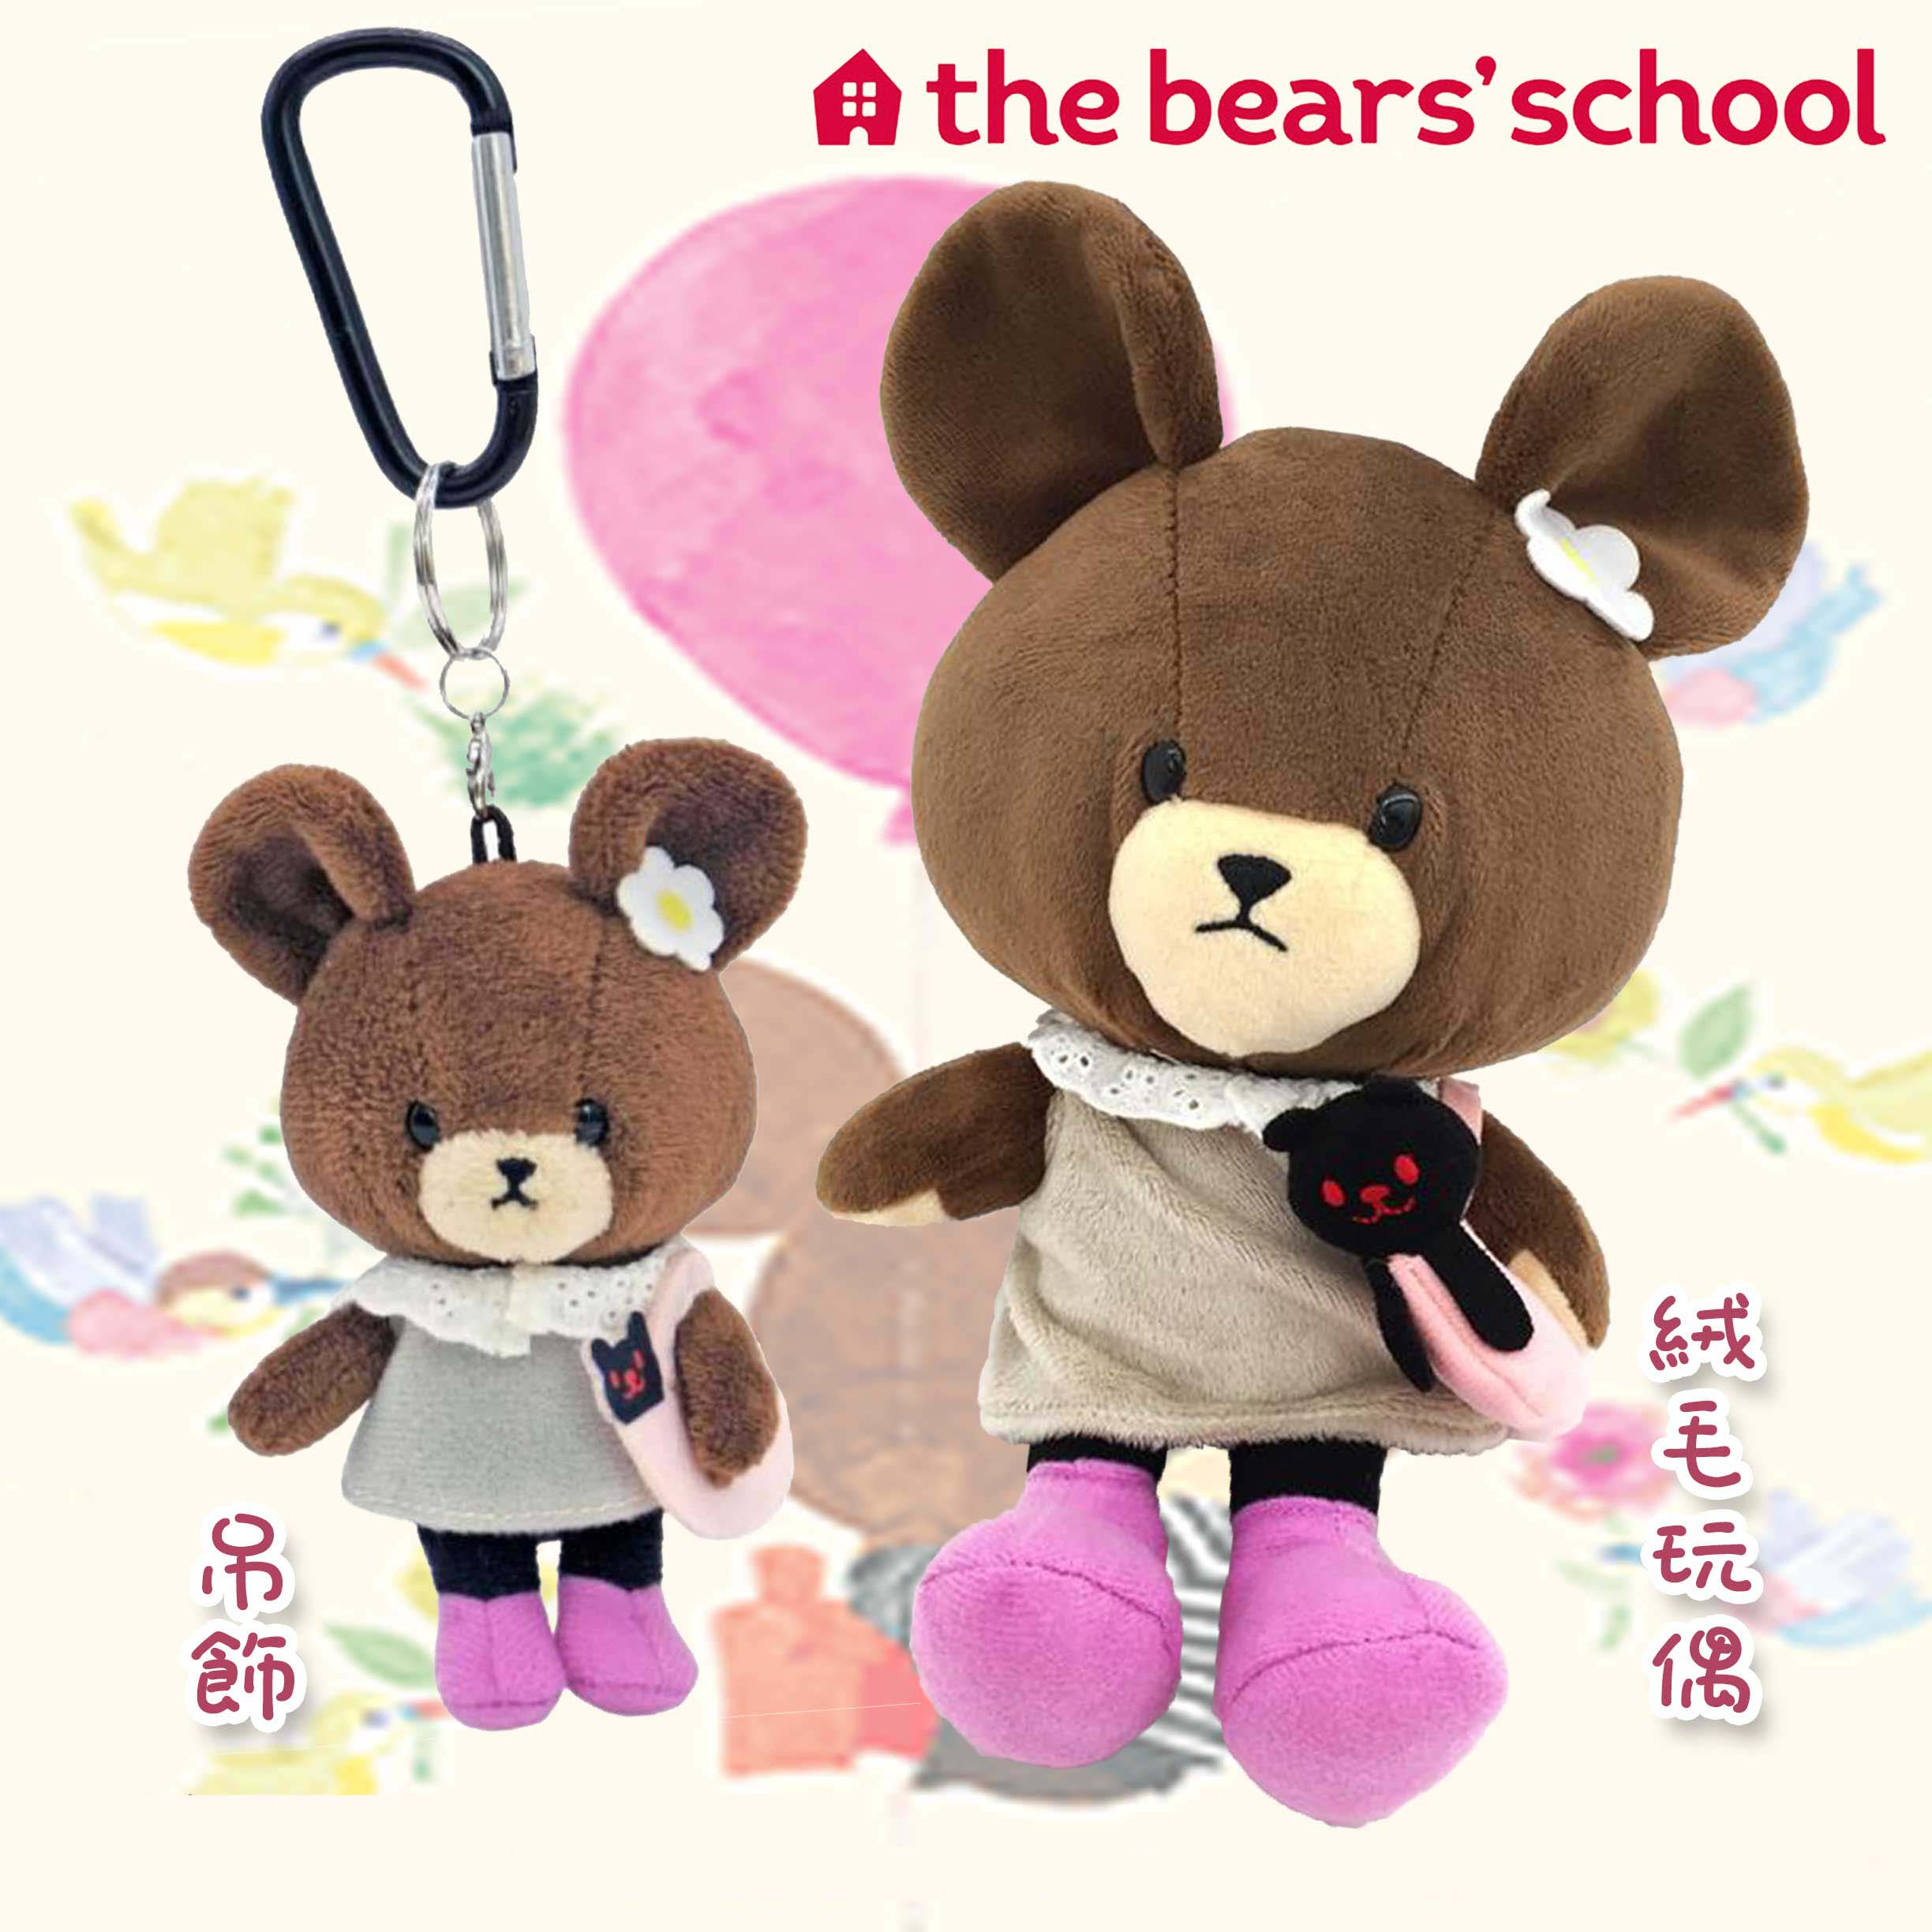 絨毛玩偶 吊飾-上學熊 小熊學校 the bears' school  日本進口正版授權